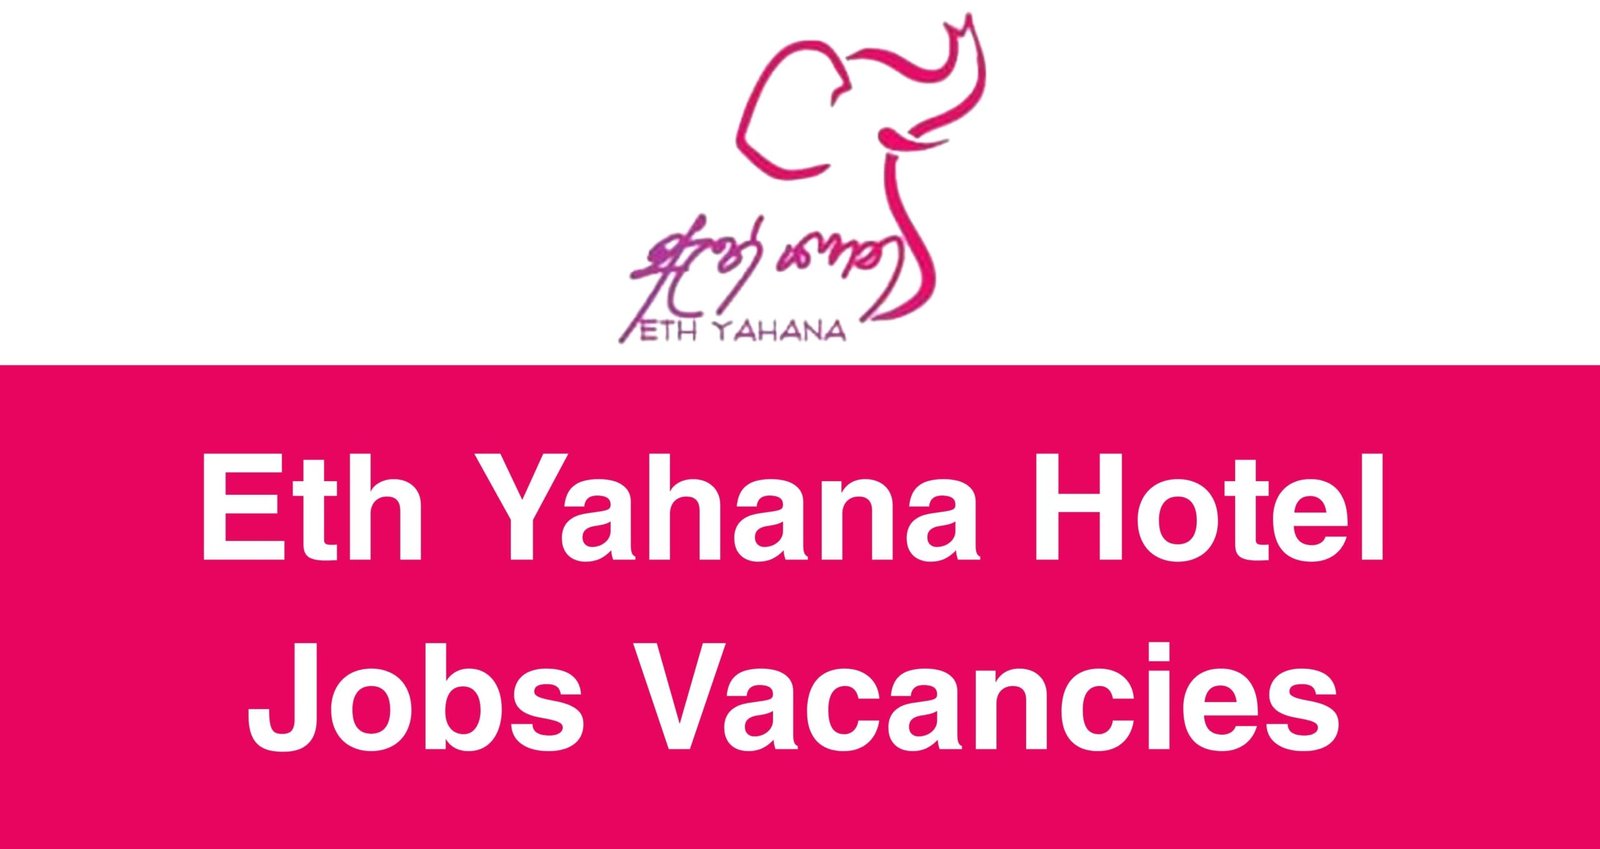 Eth Yahana Hotel Jobs Vacancies